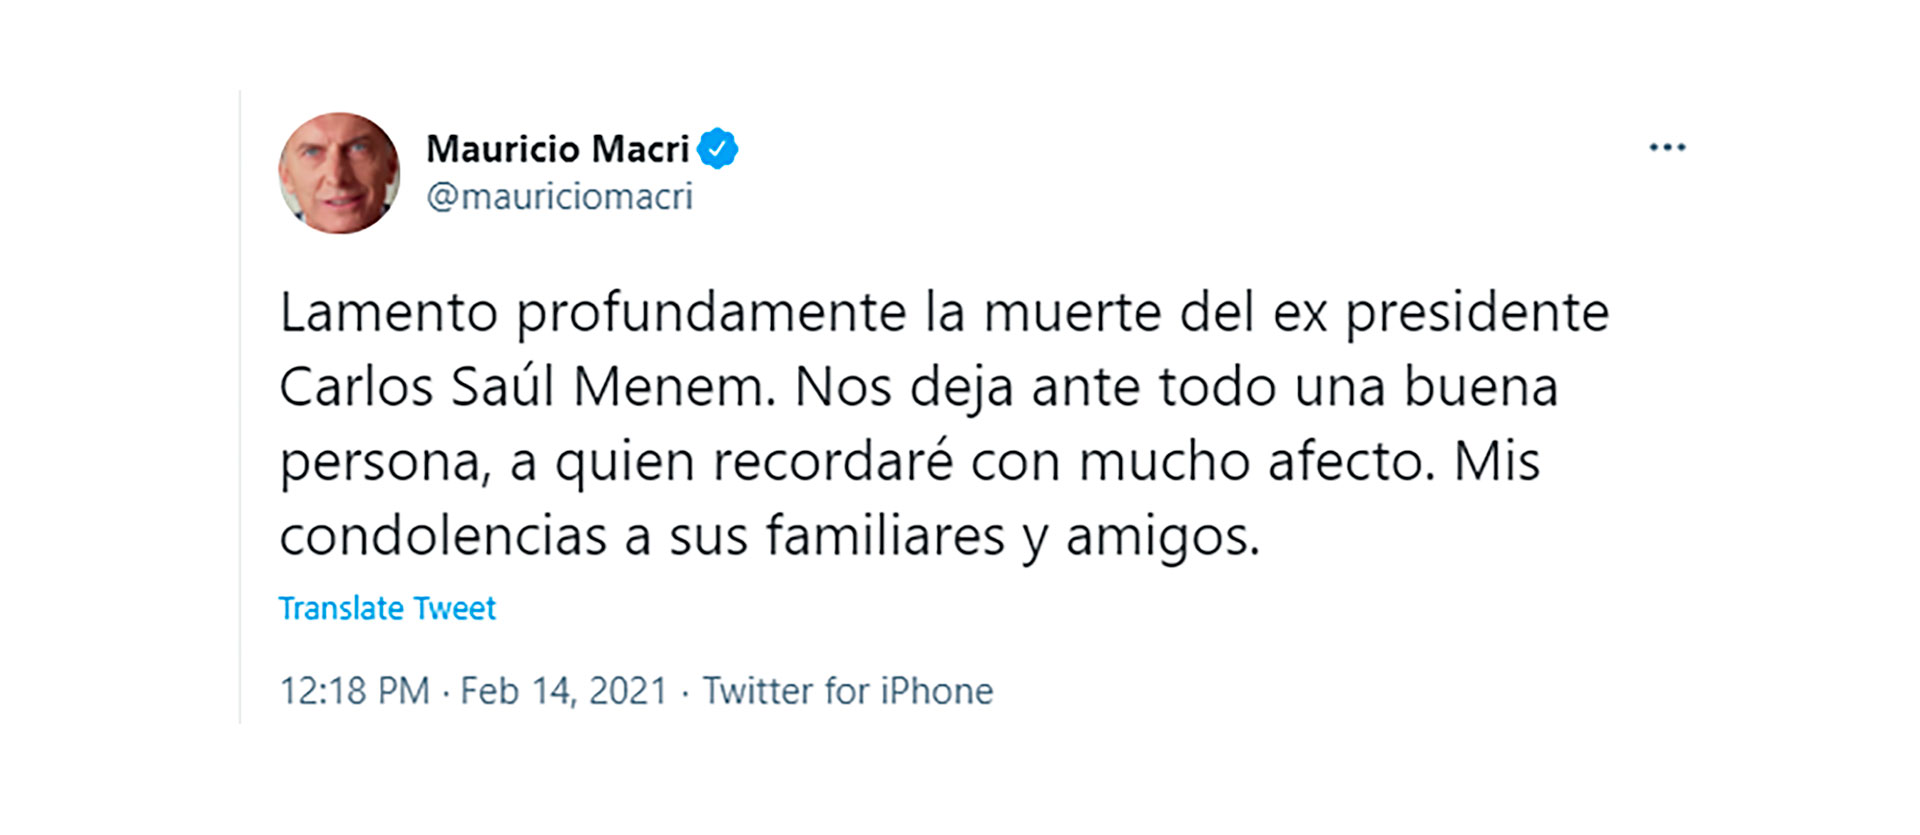 Las condolencias de Mauricio Macri